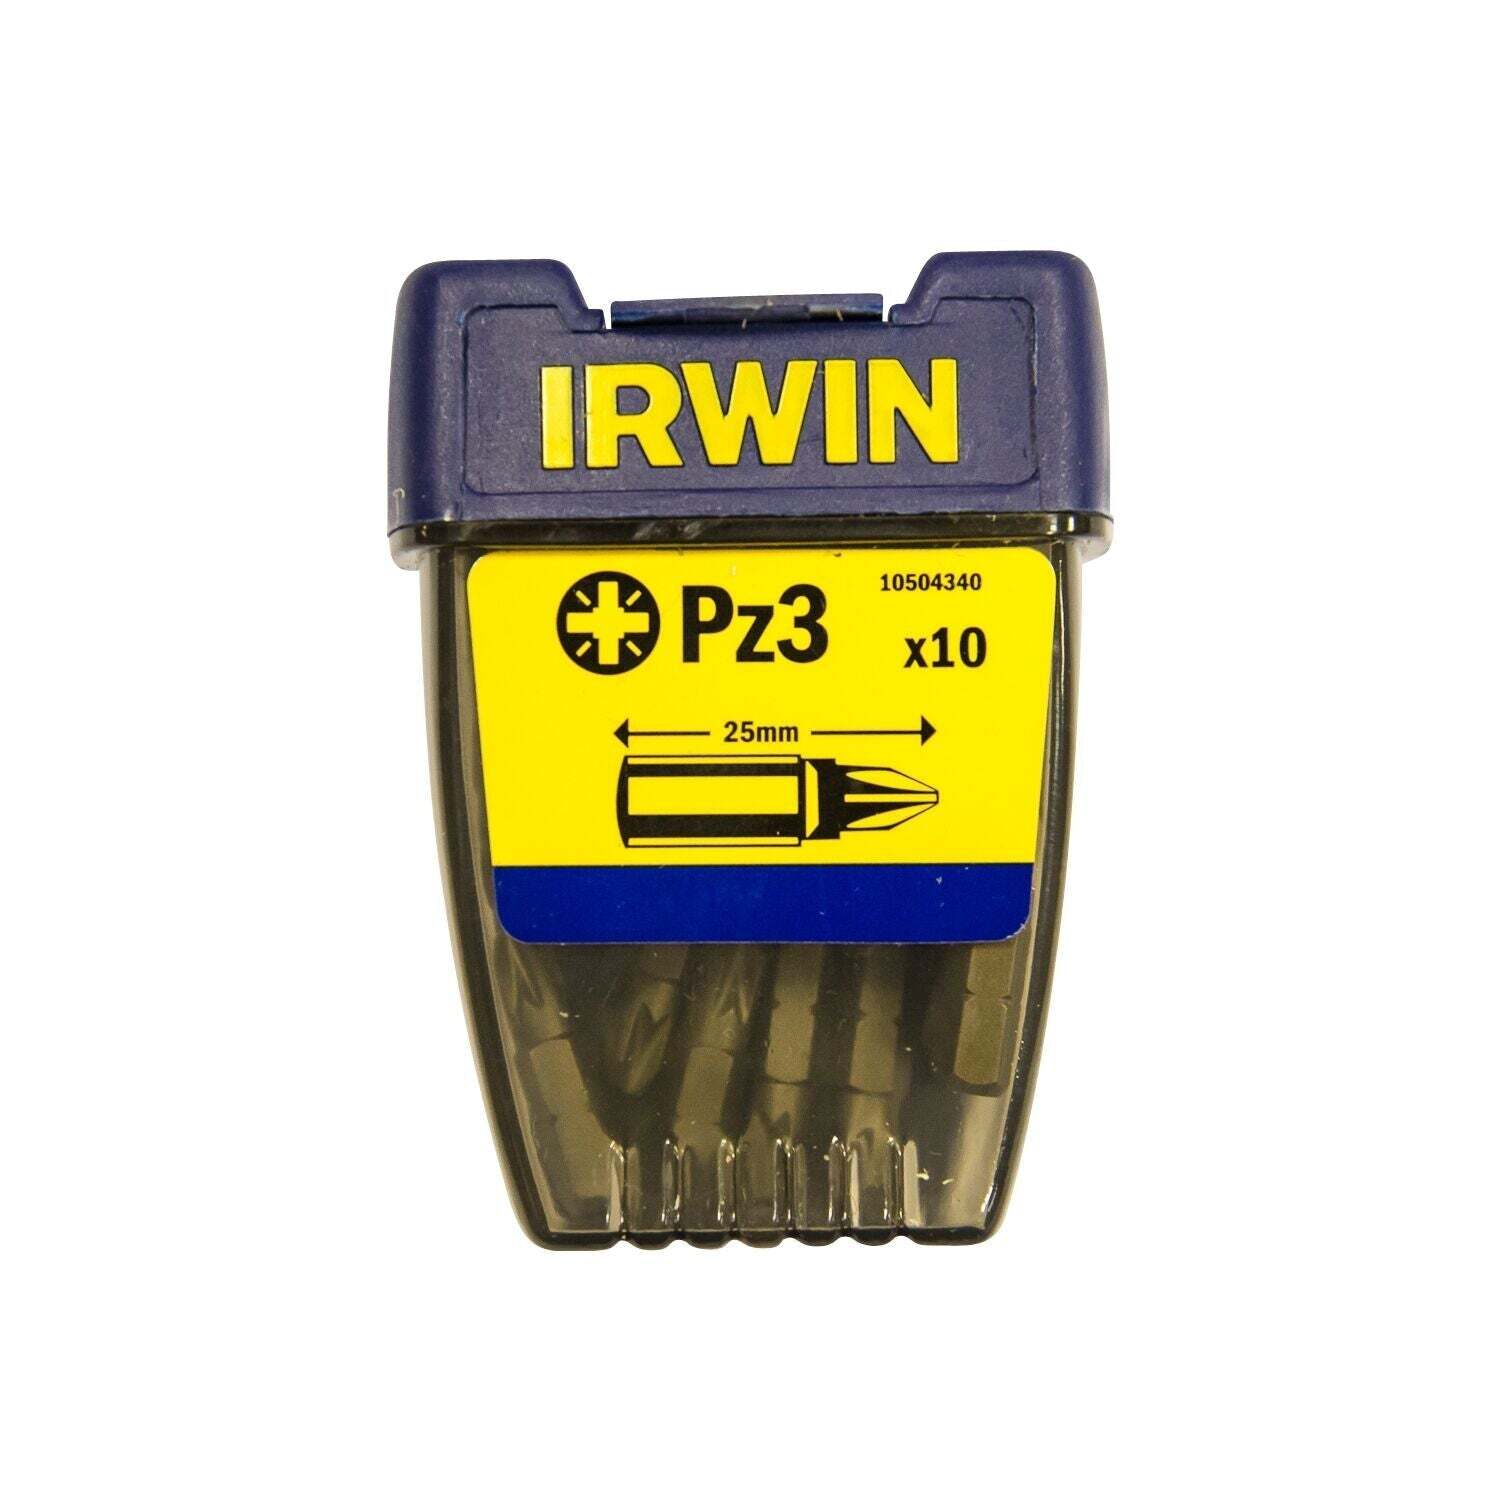 IRWIN Pozidriv Pz3 - 1/4”/25 mm - 10 stuks - 10504340